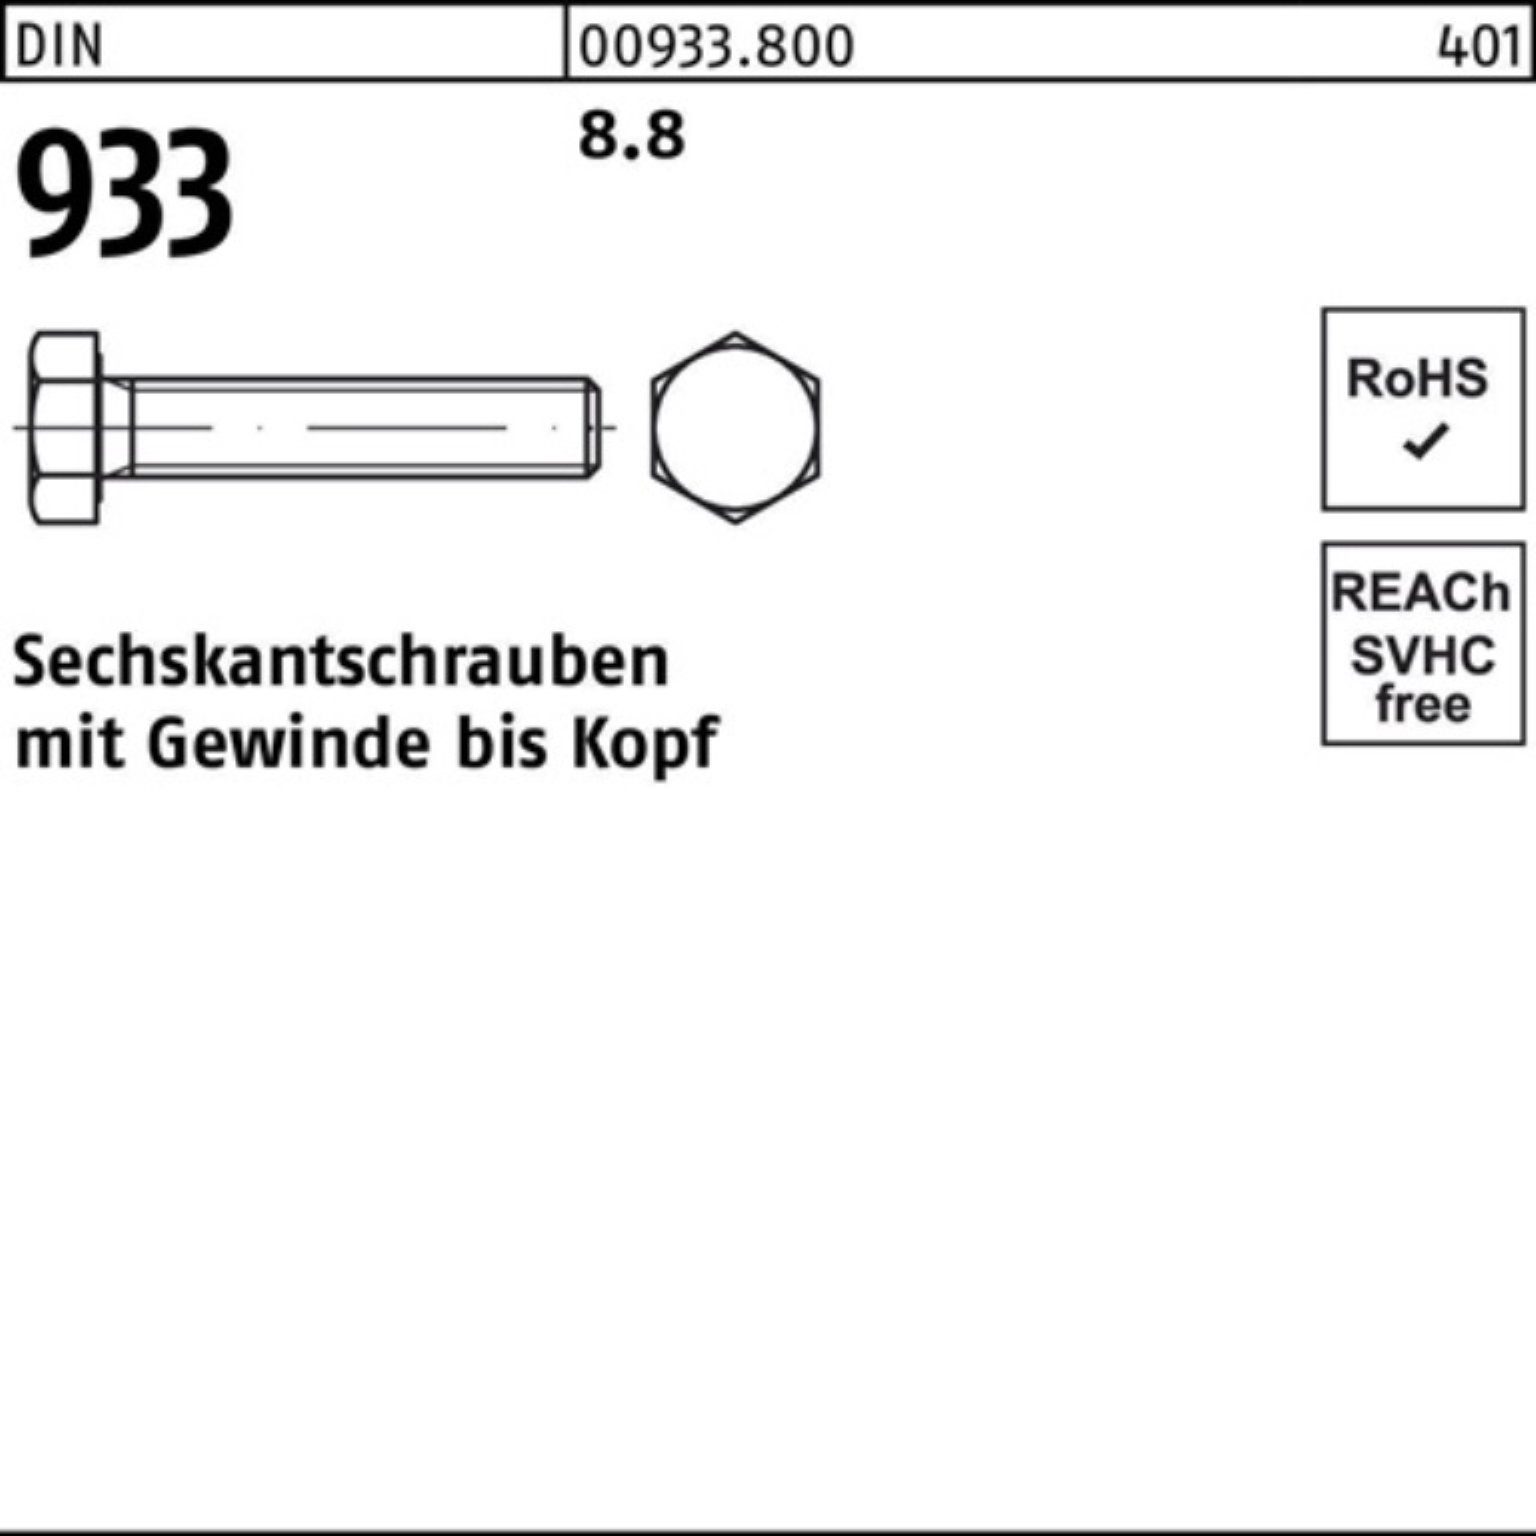 DIN 933 Sechskantschraube Reyher 8.8 Stück 50 DIN Pack M10x VG Sechskantschraube 130 100er 933